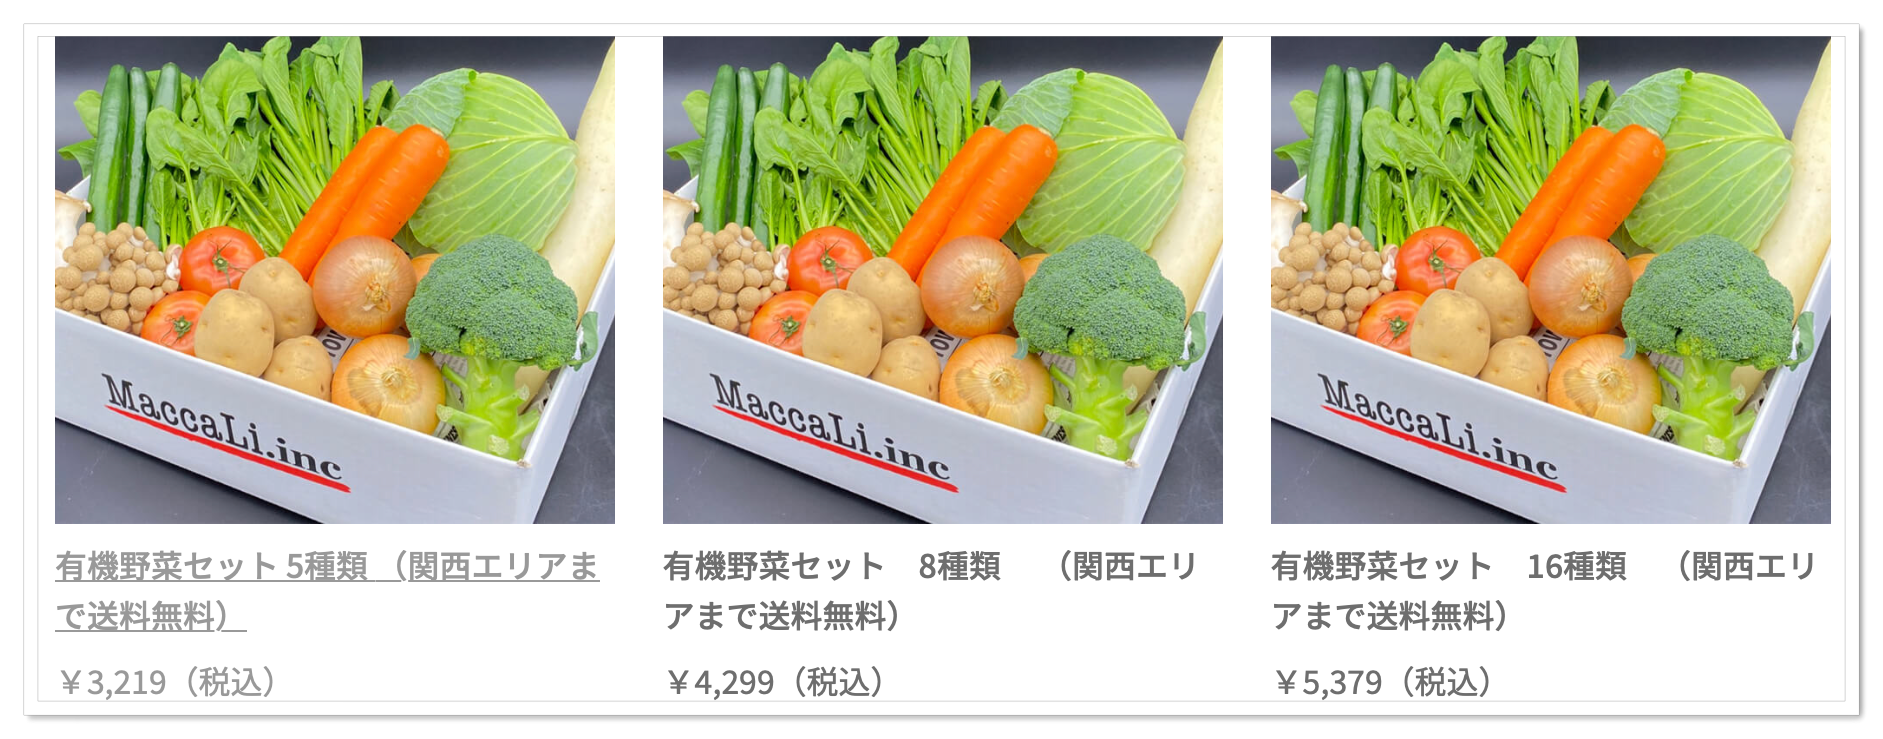 1056円 【超歓迎された】 むつみ屋 旬の有機野菜セット10〜12品